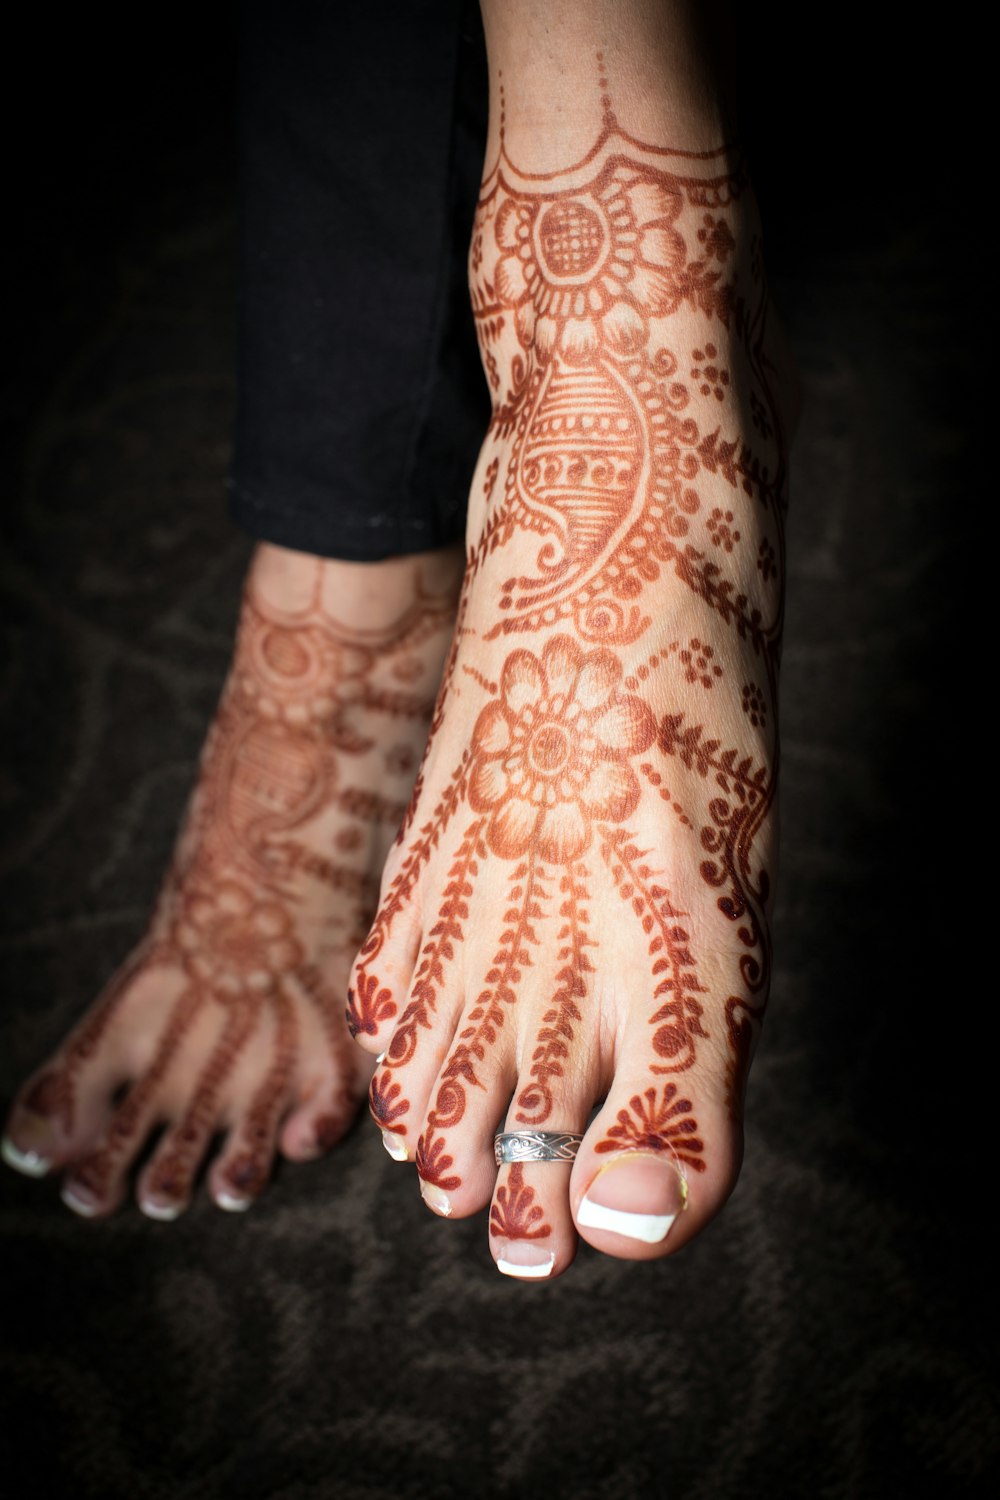 Persona con tatuaje floral rojo y blanco en la mano izquierda